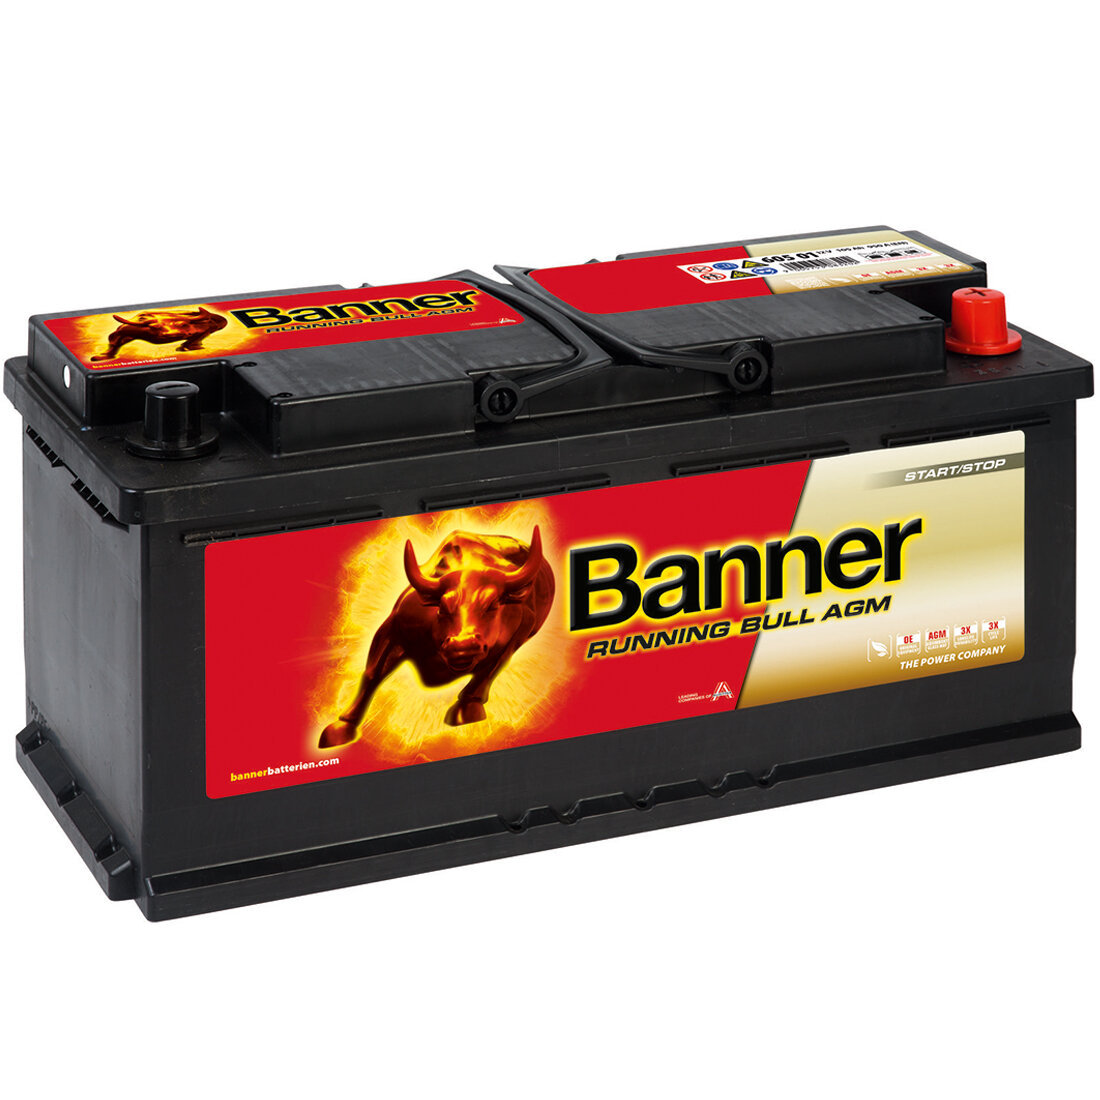 Banner Running Bull AGM 605 01 Starterbatterie 105Ah 12V, 188,50 €